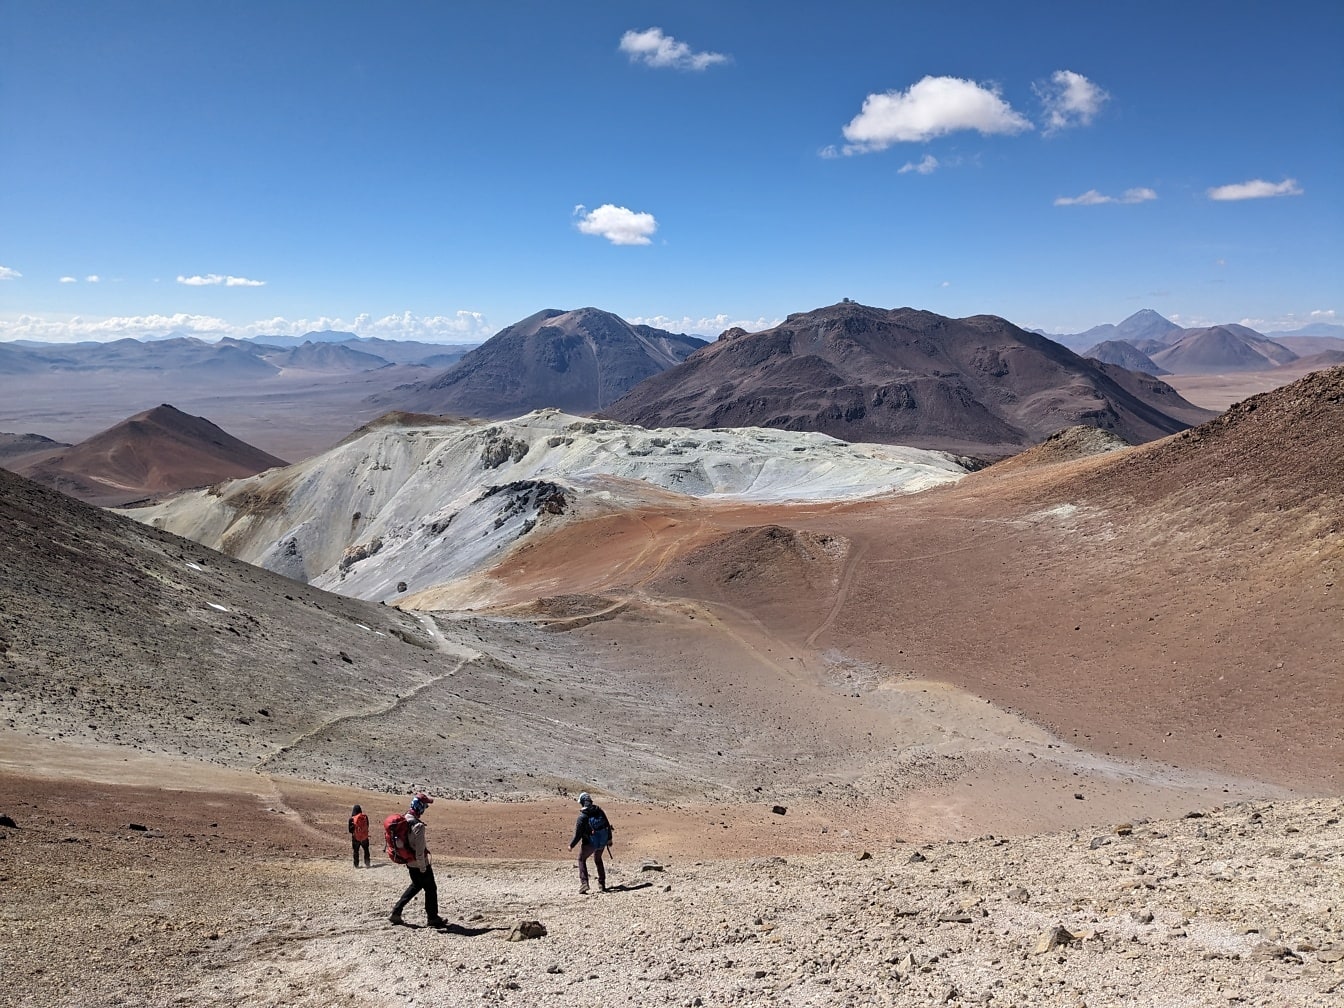 Ľudia kráčajúci po púštnom vrchole hory Cerro Toco v Čile